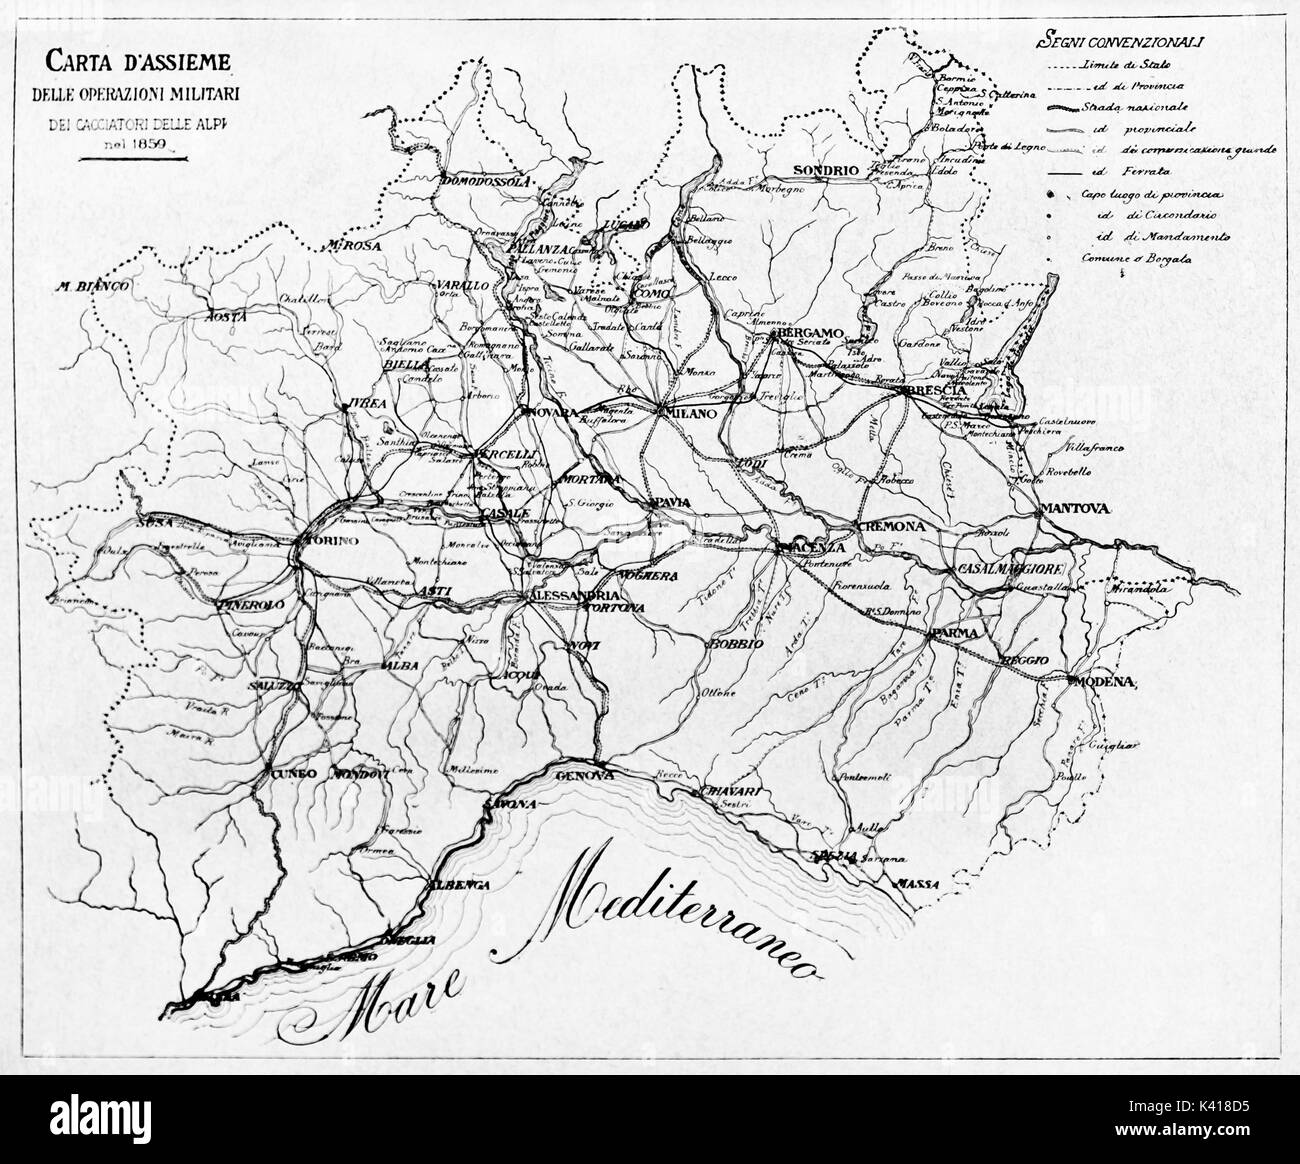 Vecchio bianco e nero mappa di Cacciatori delle Alpi azioni militari nel 1859. Da E. Matania pubblicato su Garibaldi e i suoi tempi Milano Italia 1884 Foto Stock